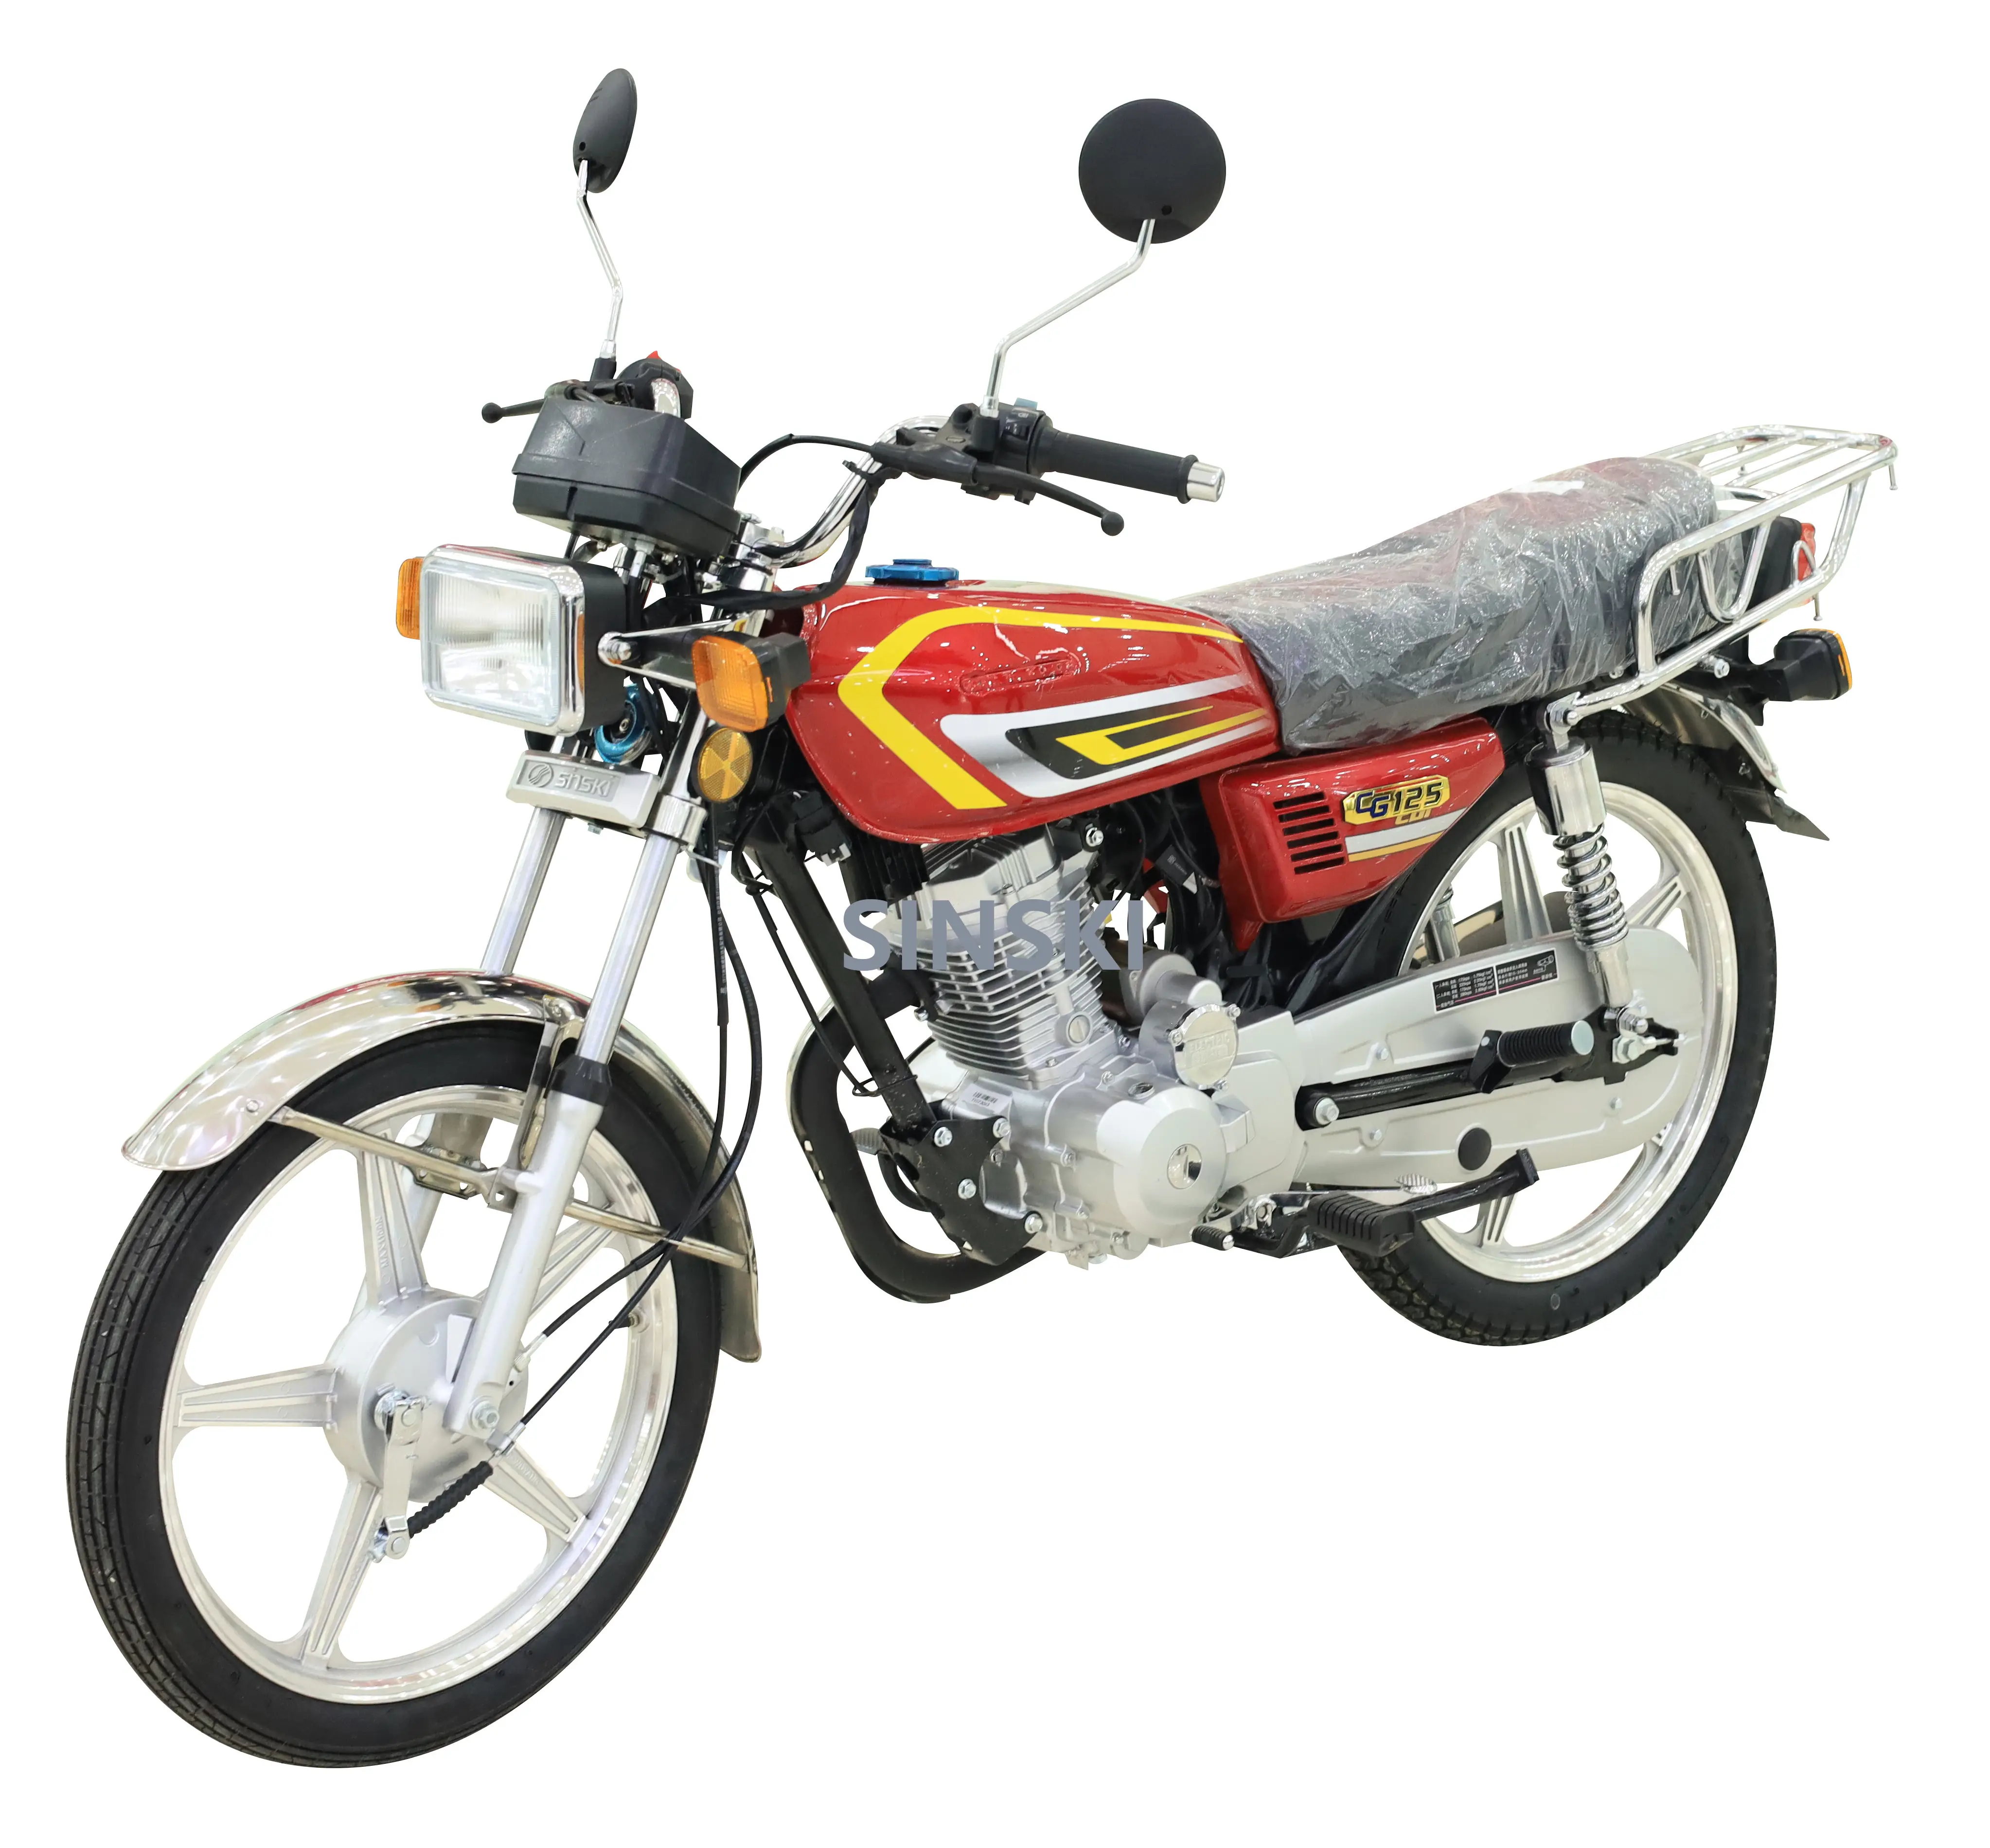 Nouveau design de motos à essence 125cc 150cc moto à deux roues moto à essence bon marché motos de sport